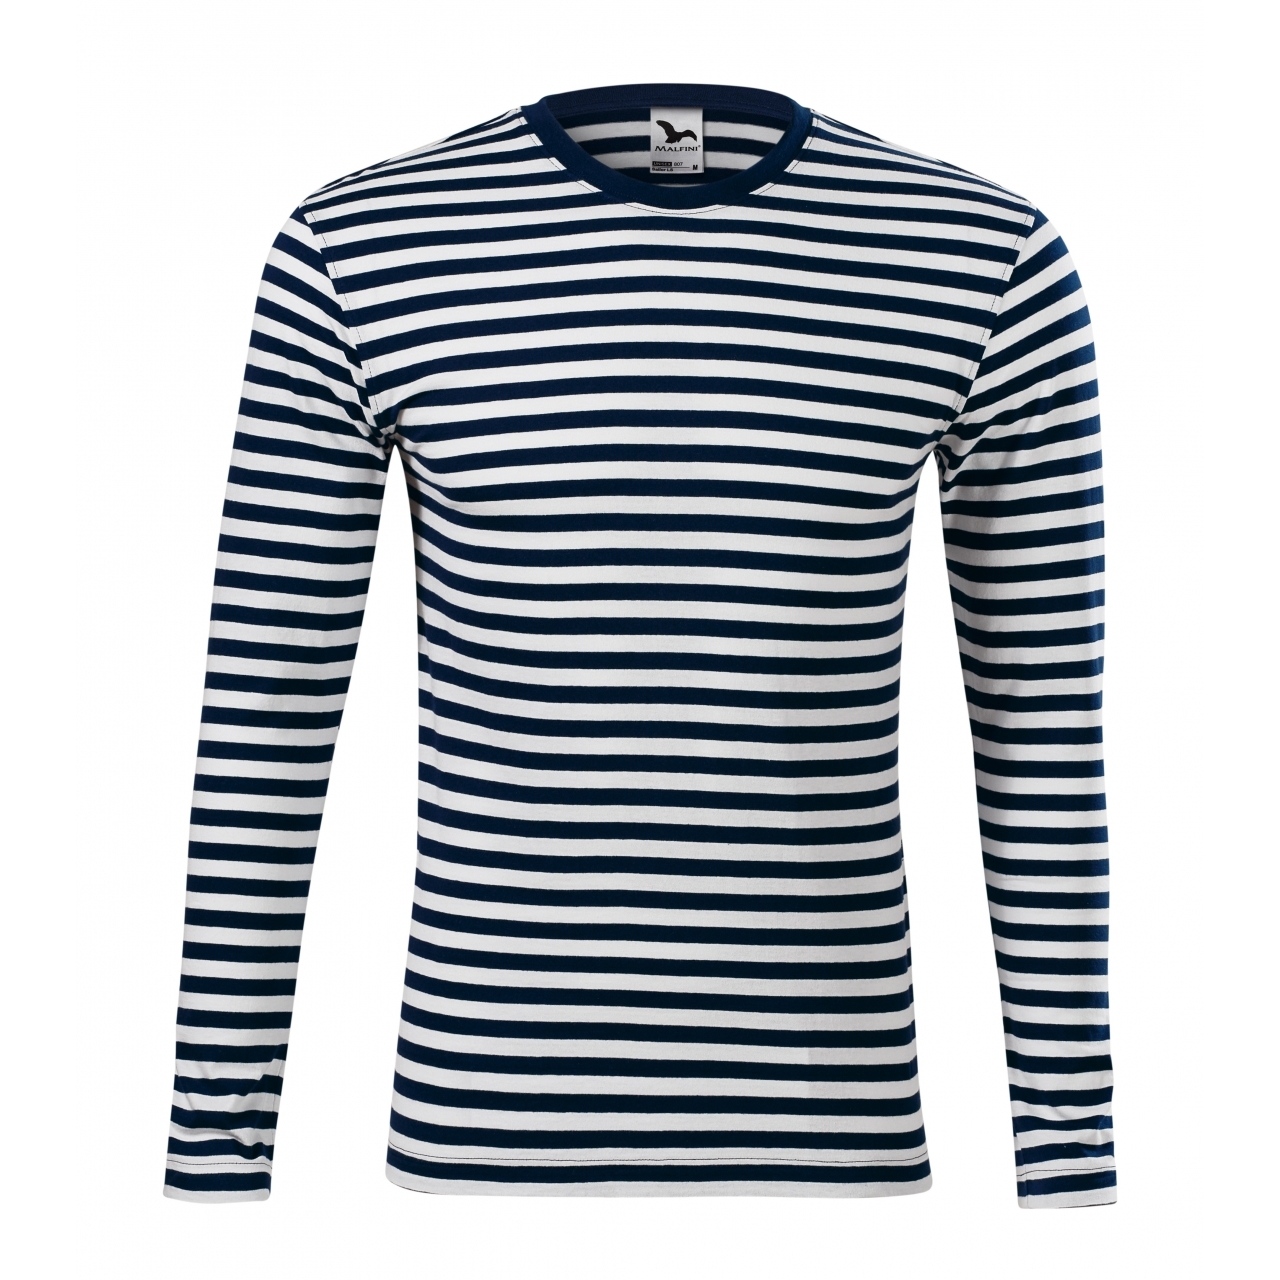 Námořnické pruhované tričko Malfini - navy-bílé, XXL